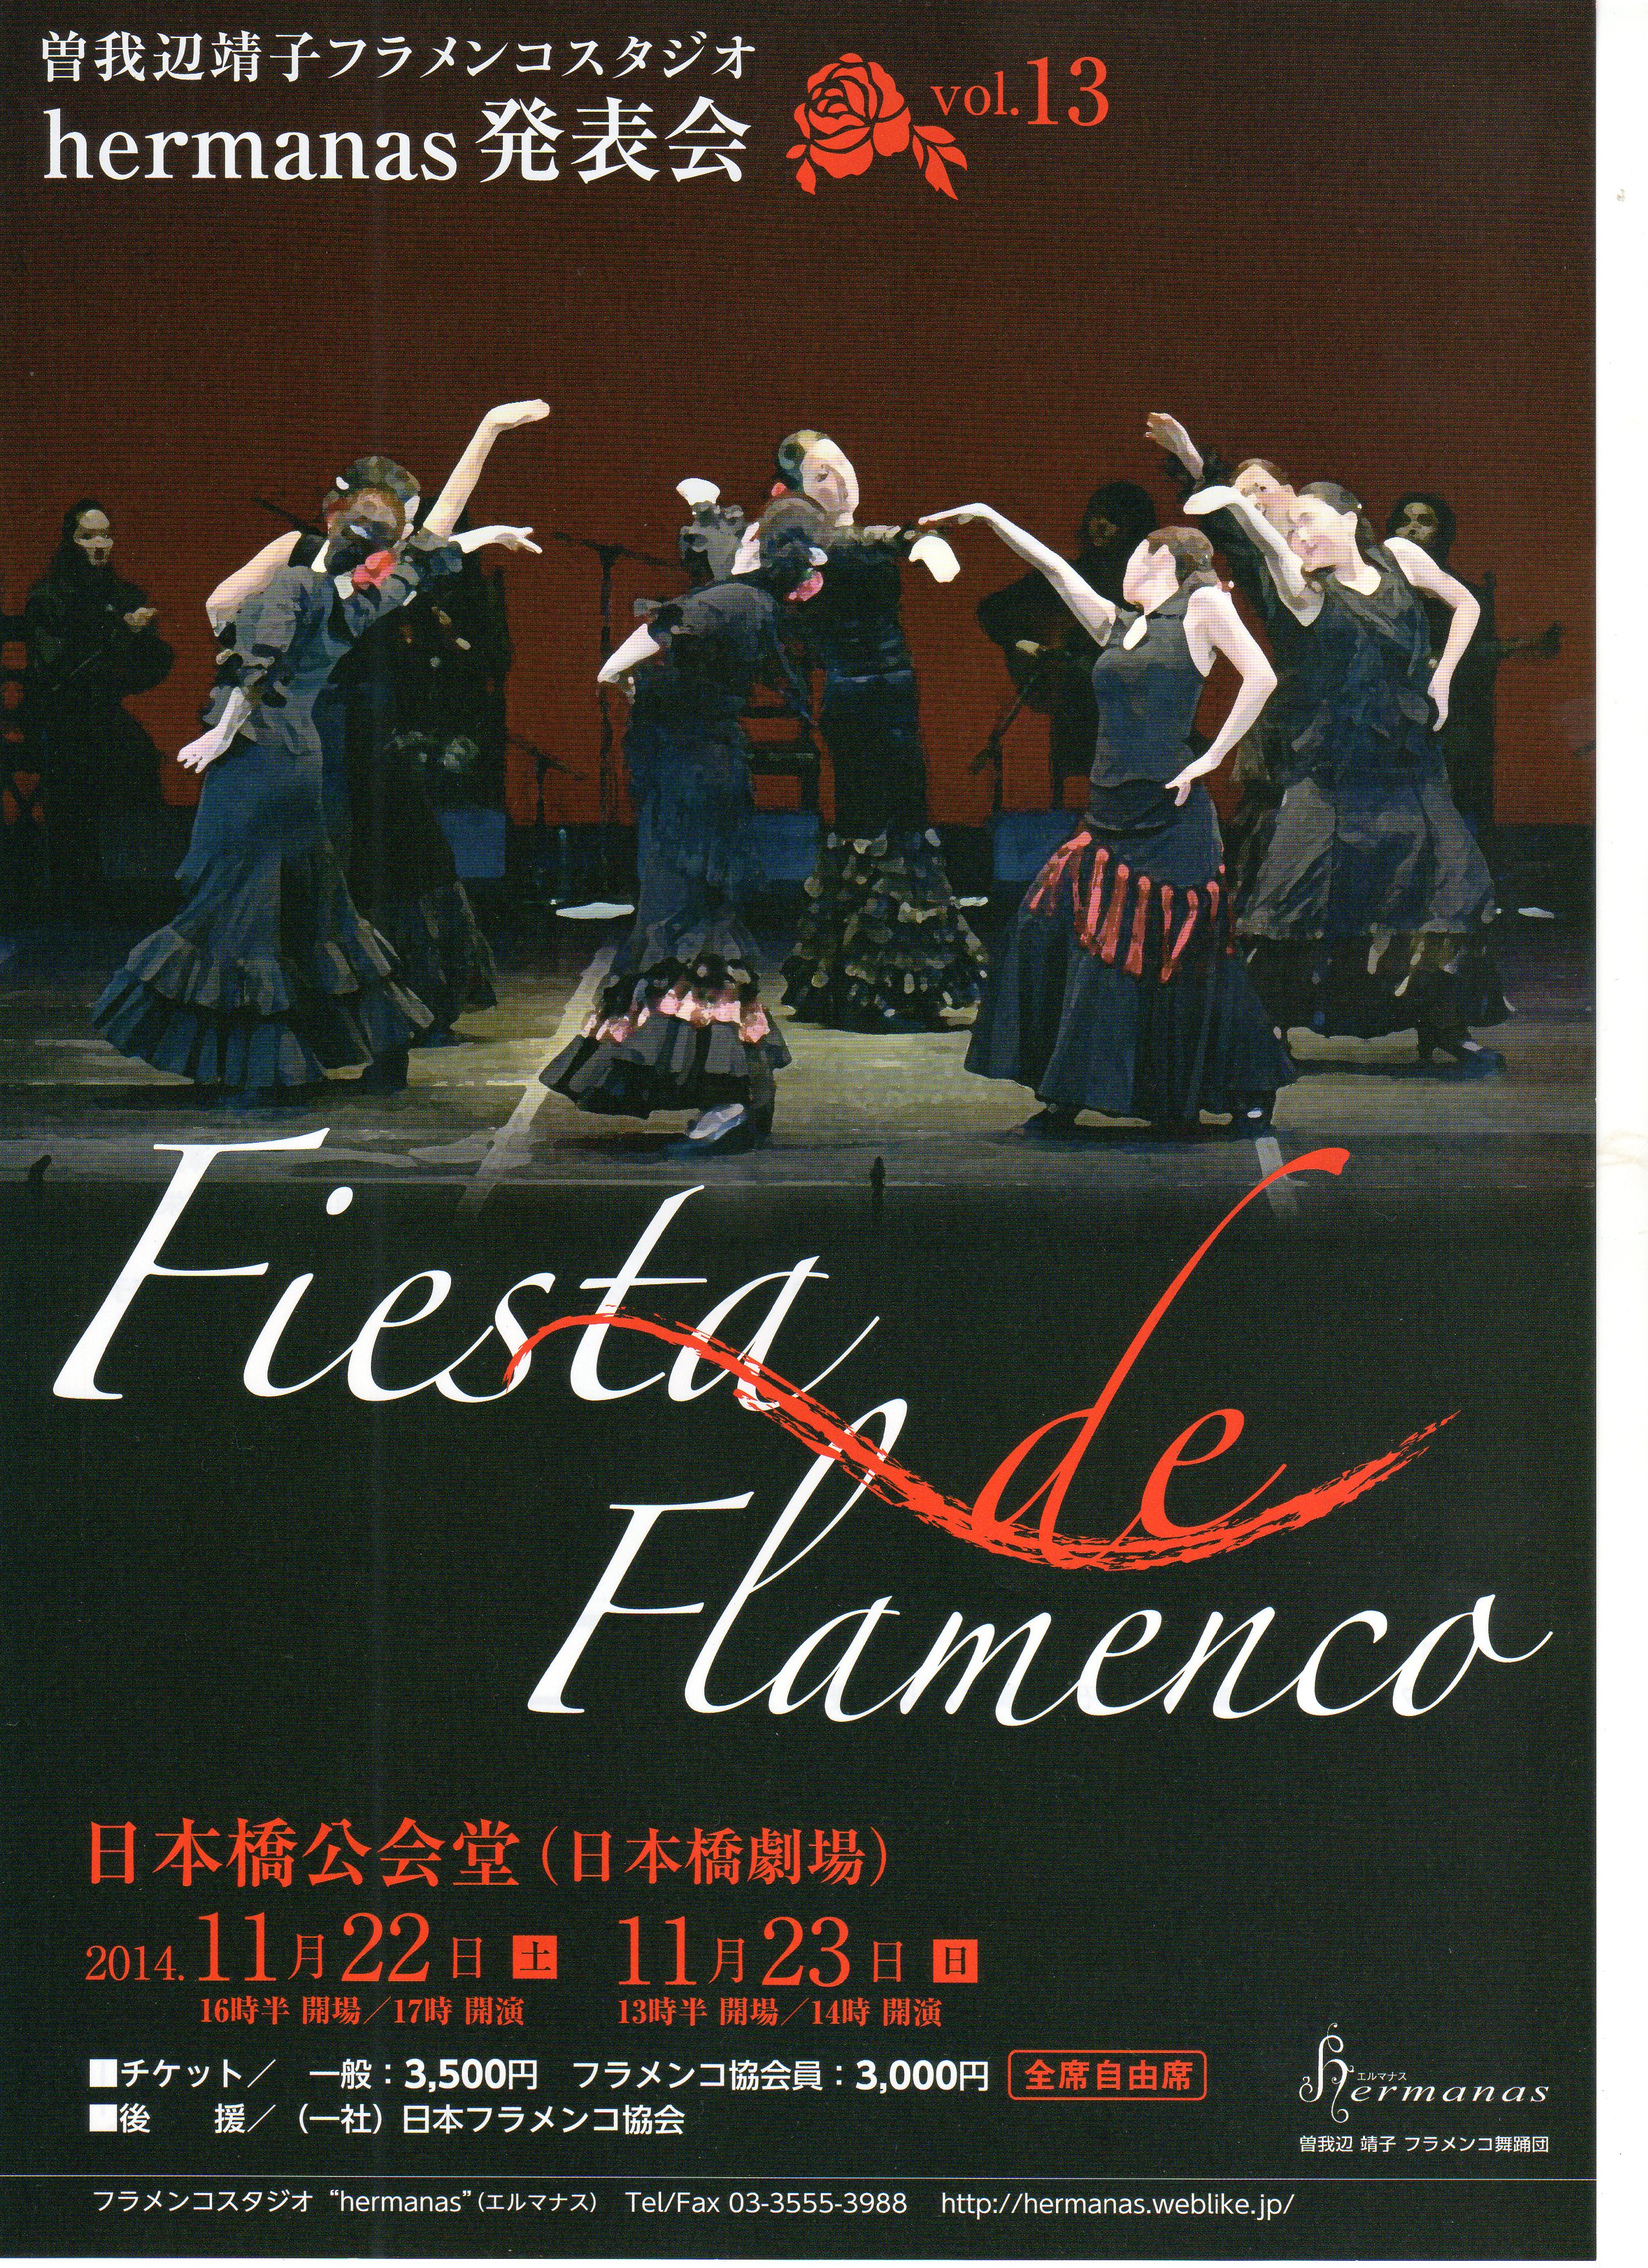 曽我部靖子フラメンコスタジオhermanas発表会vol.13 Fiesta de Flamenco